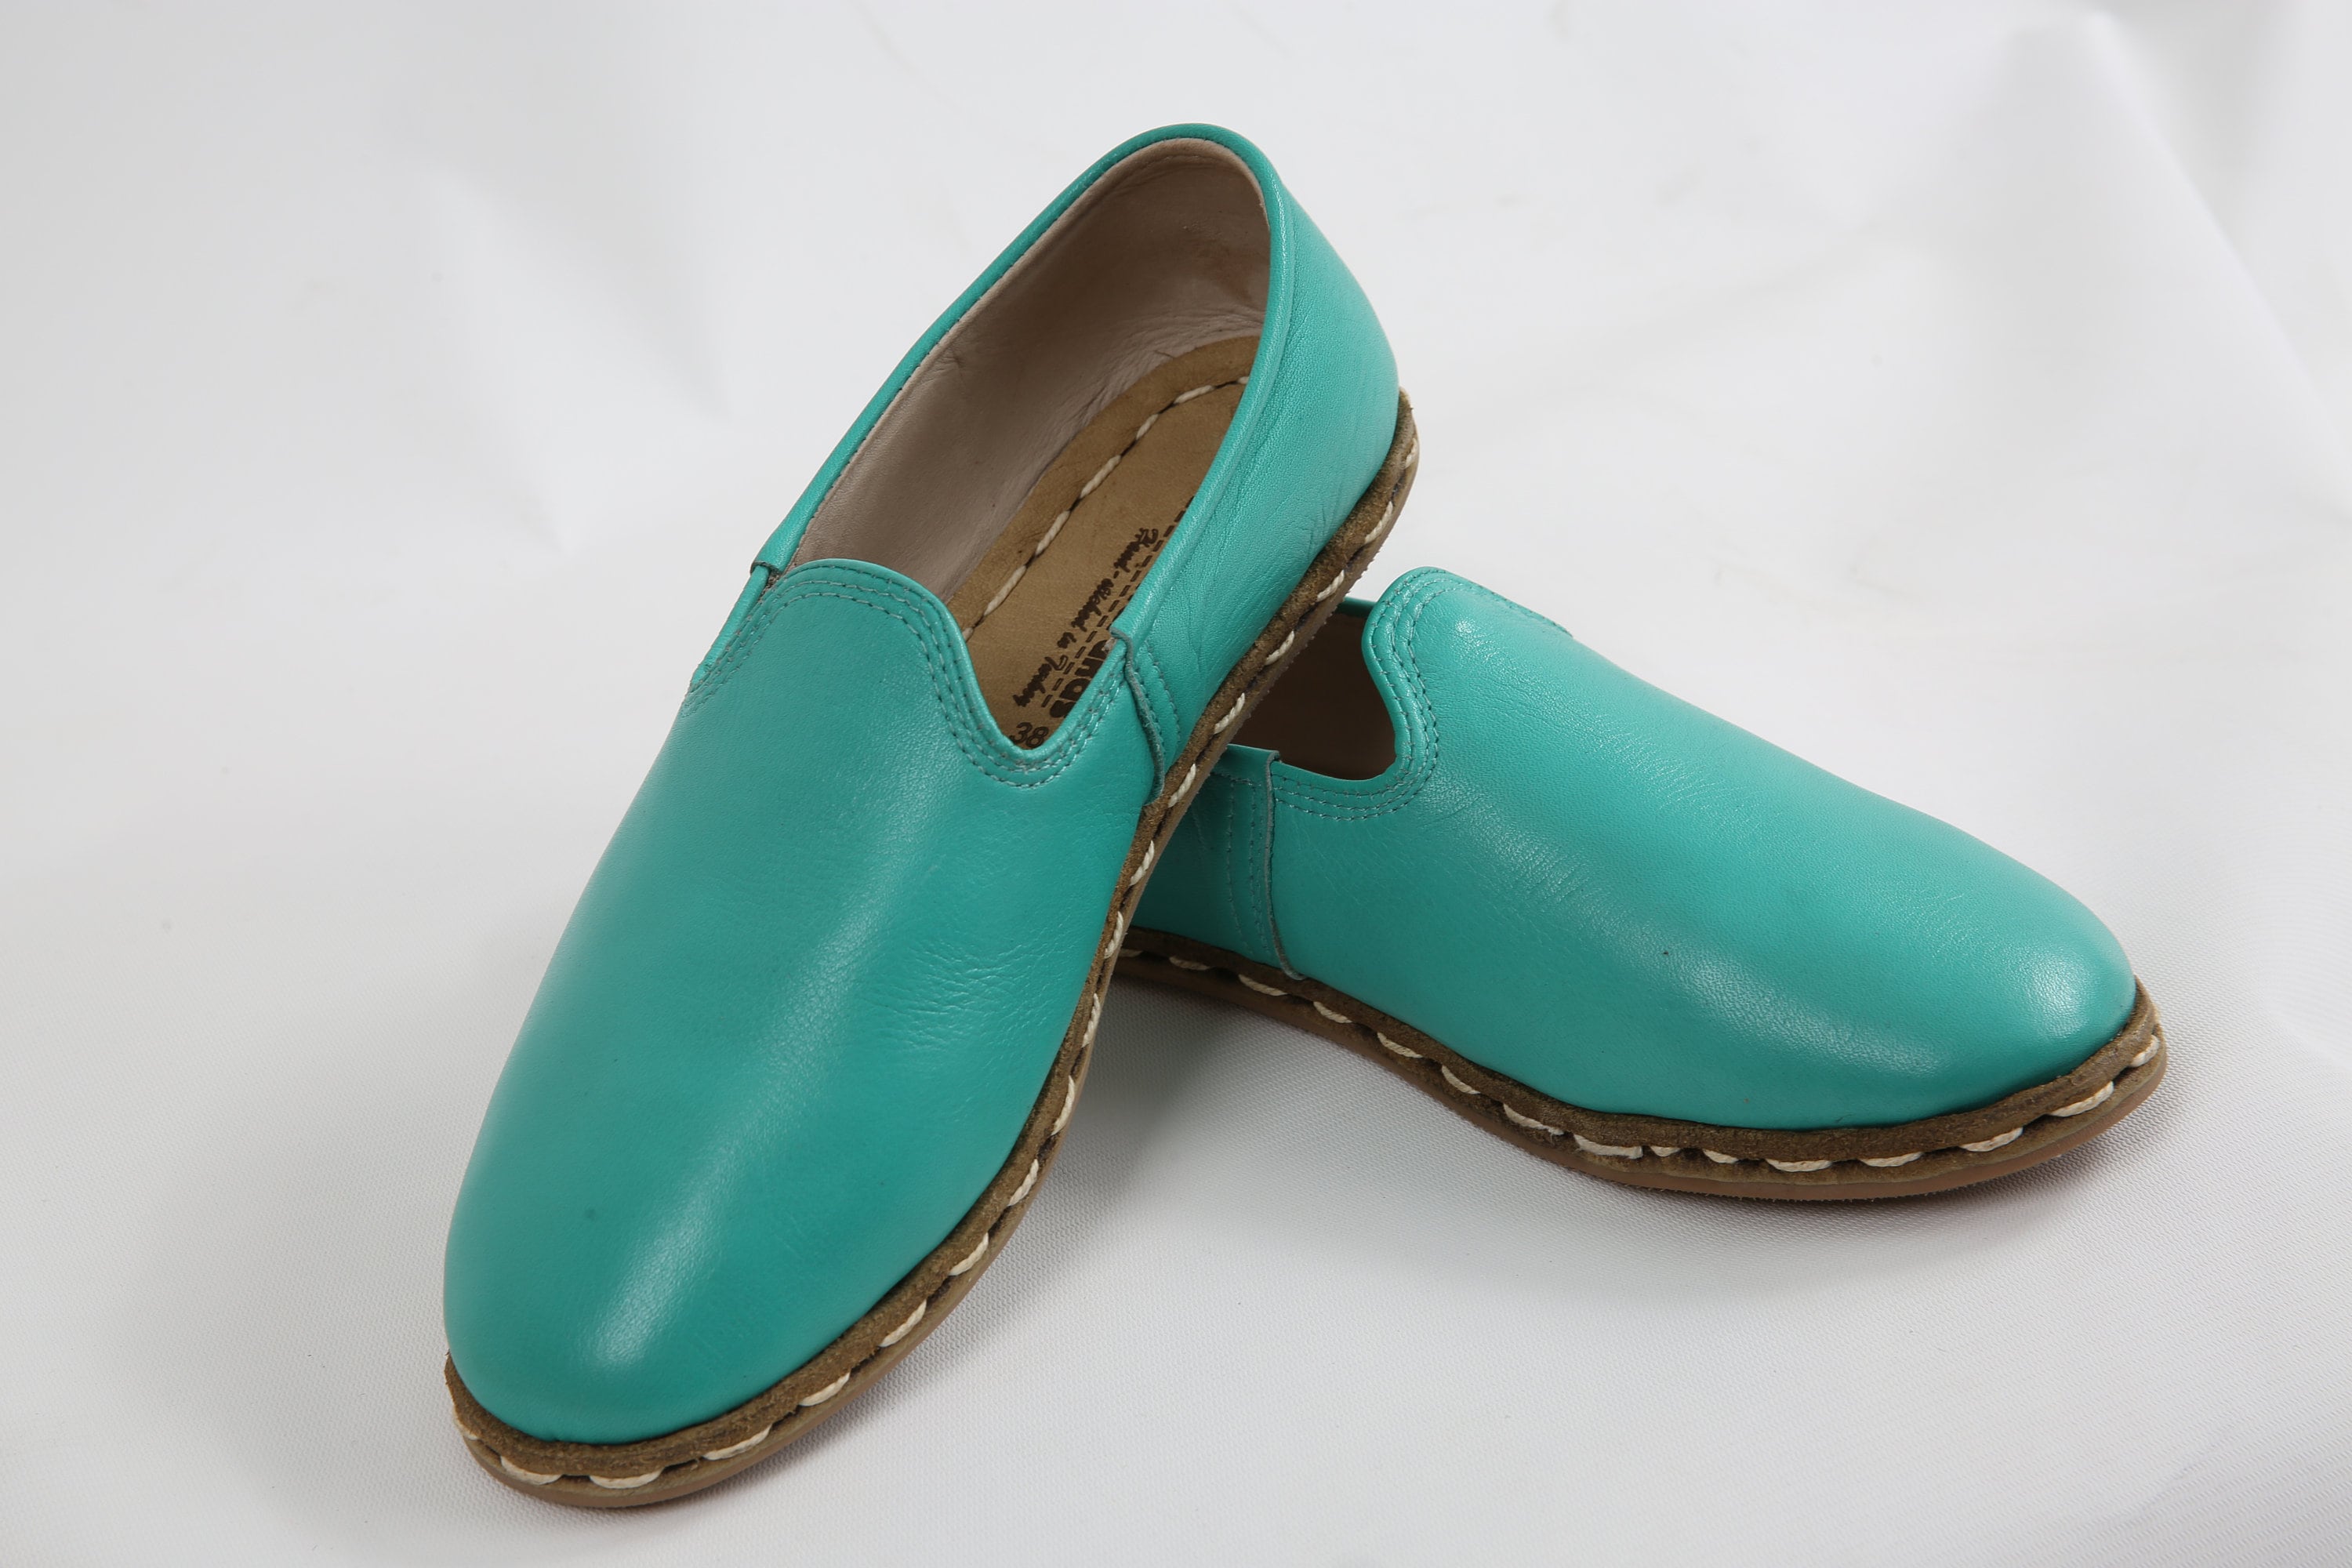 TURQUOISE BLUE SHOES Turquoise Flat Shoes Unisex Leather | Etsy